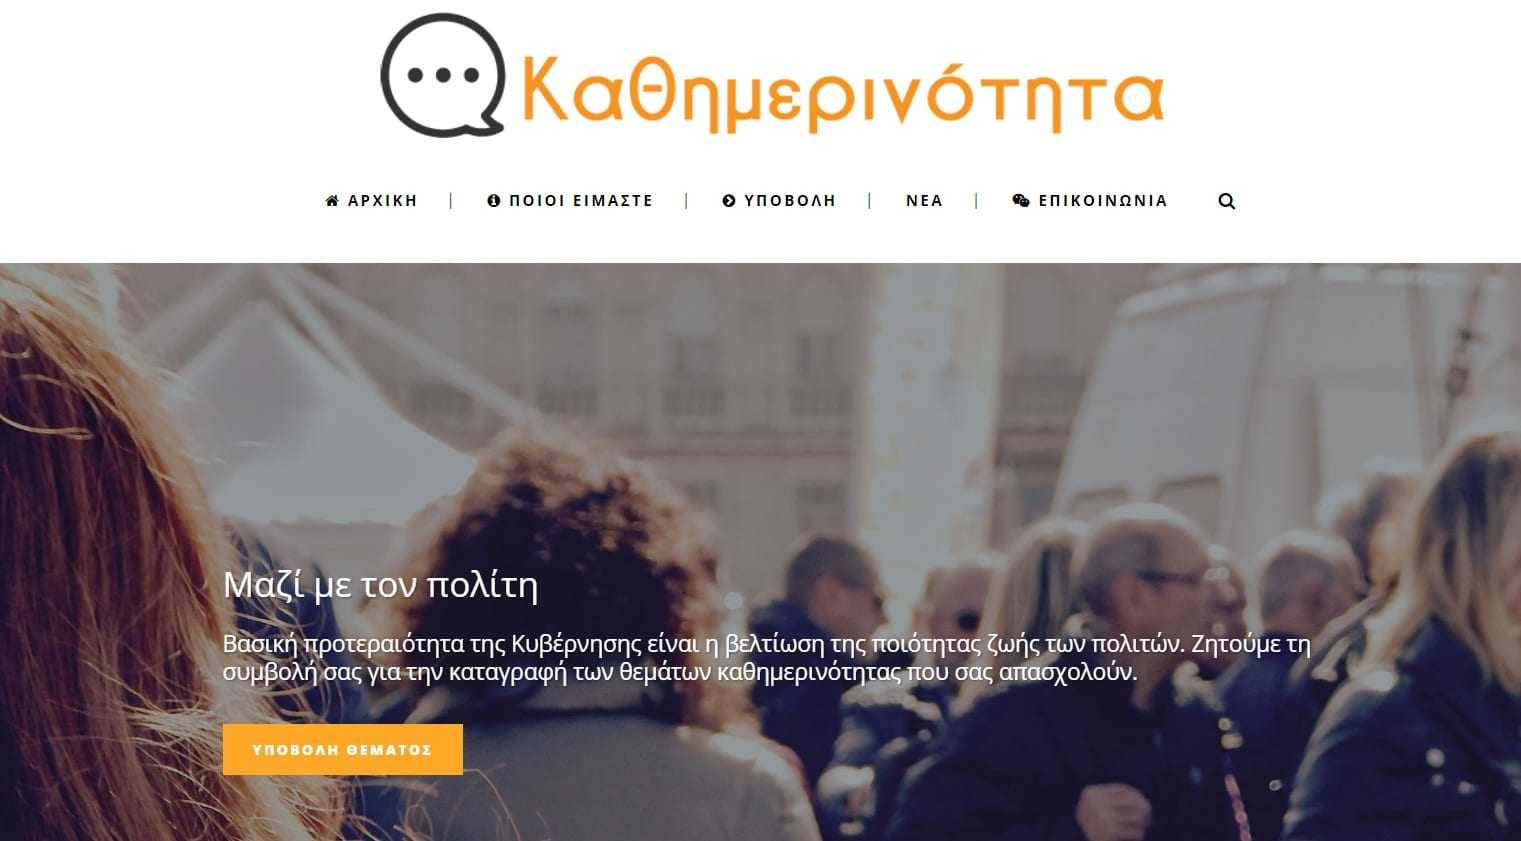 Η “καθημερινότητα” αλλάζει σελίδα-Αναβαθμίζεται η ιστοσελίδα kathimerinotita.gov.gr